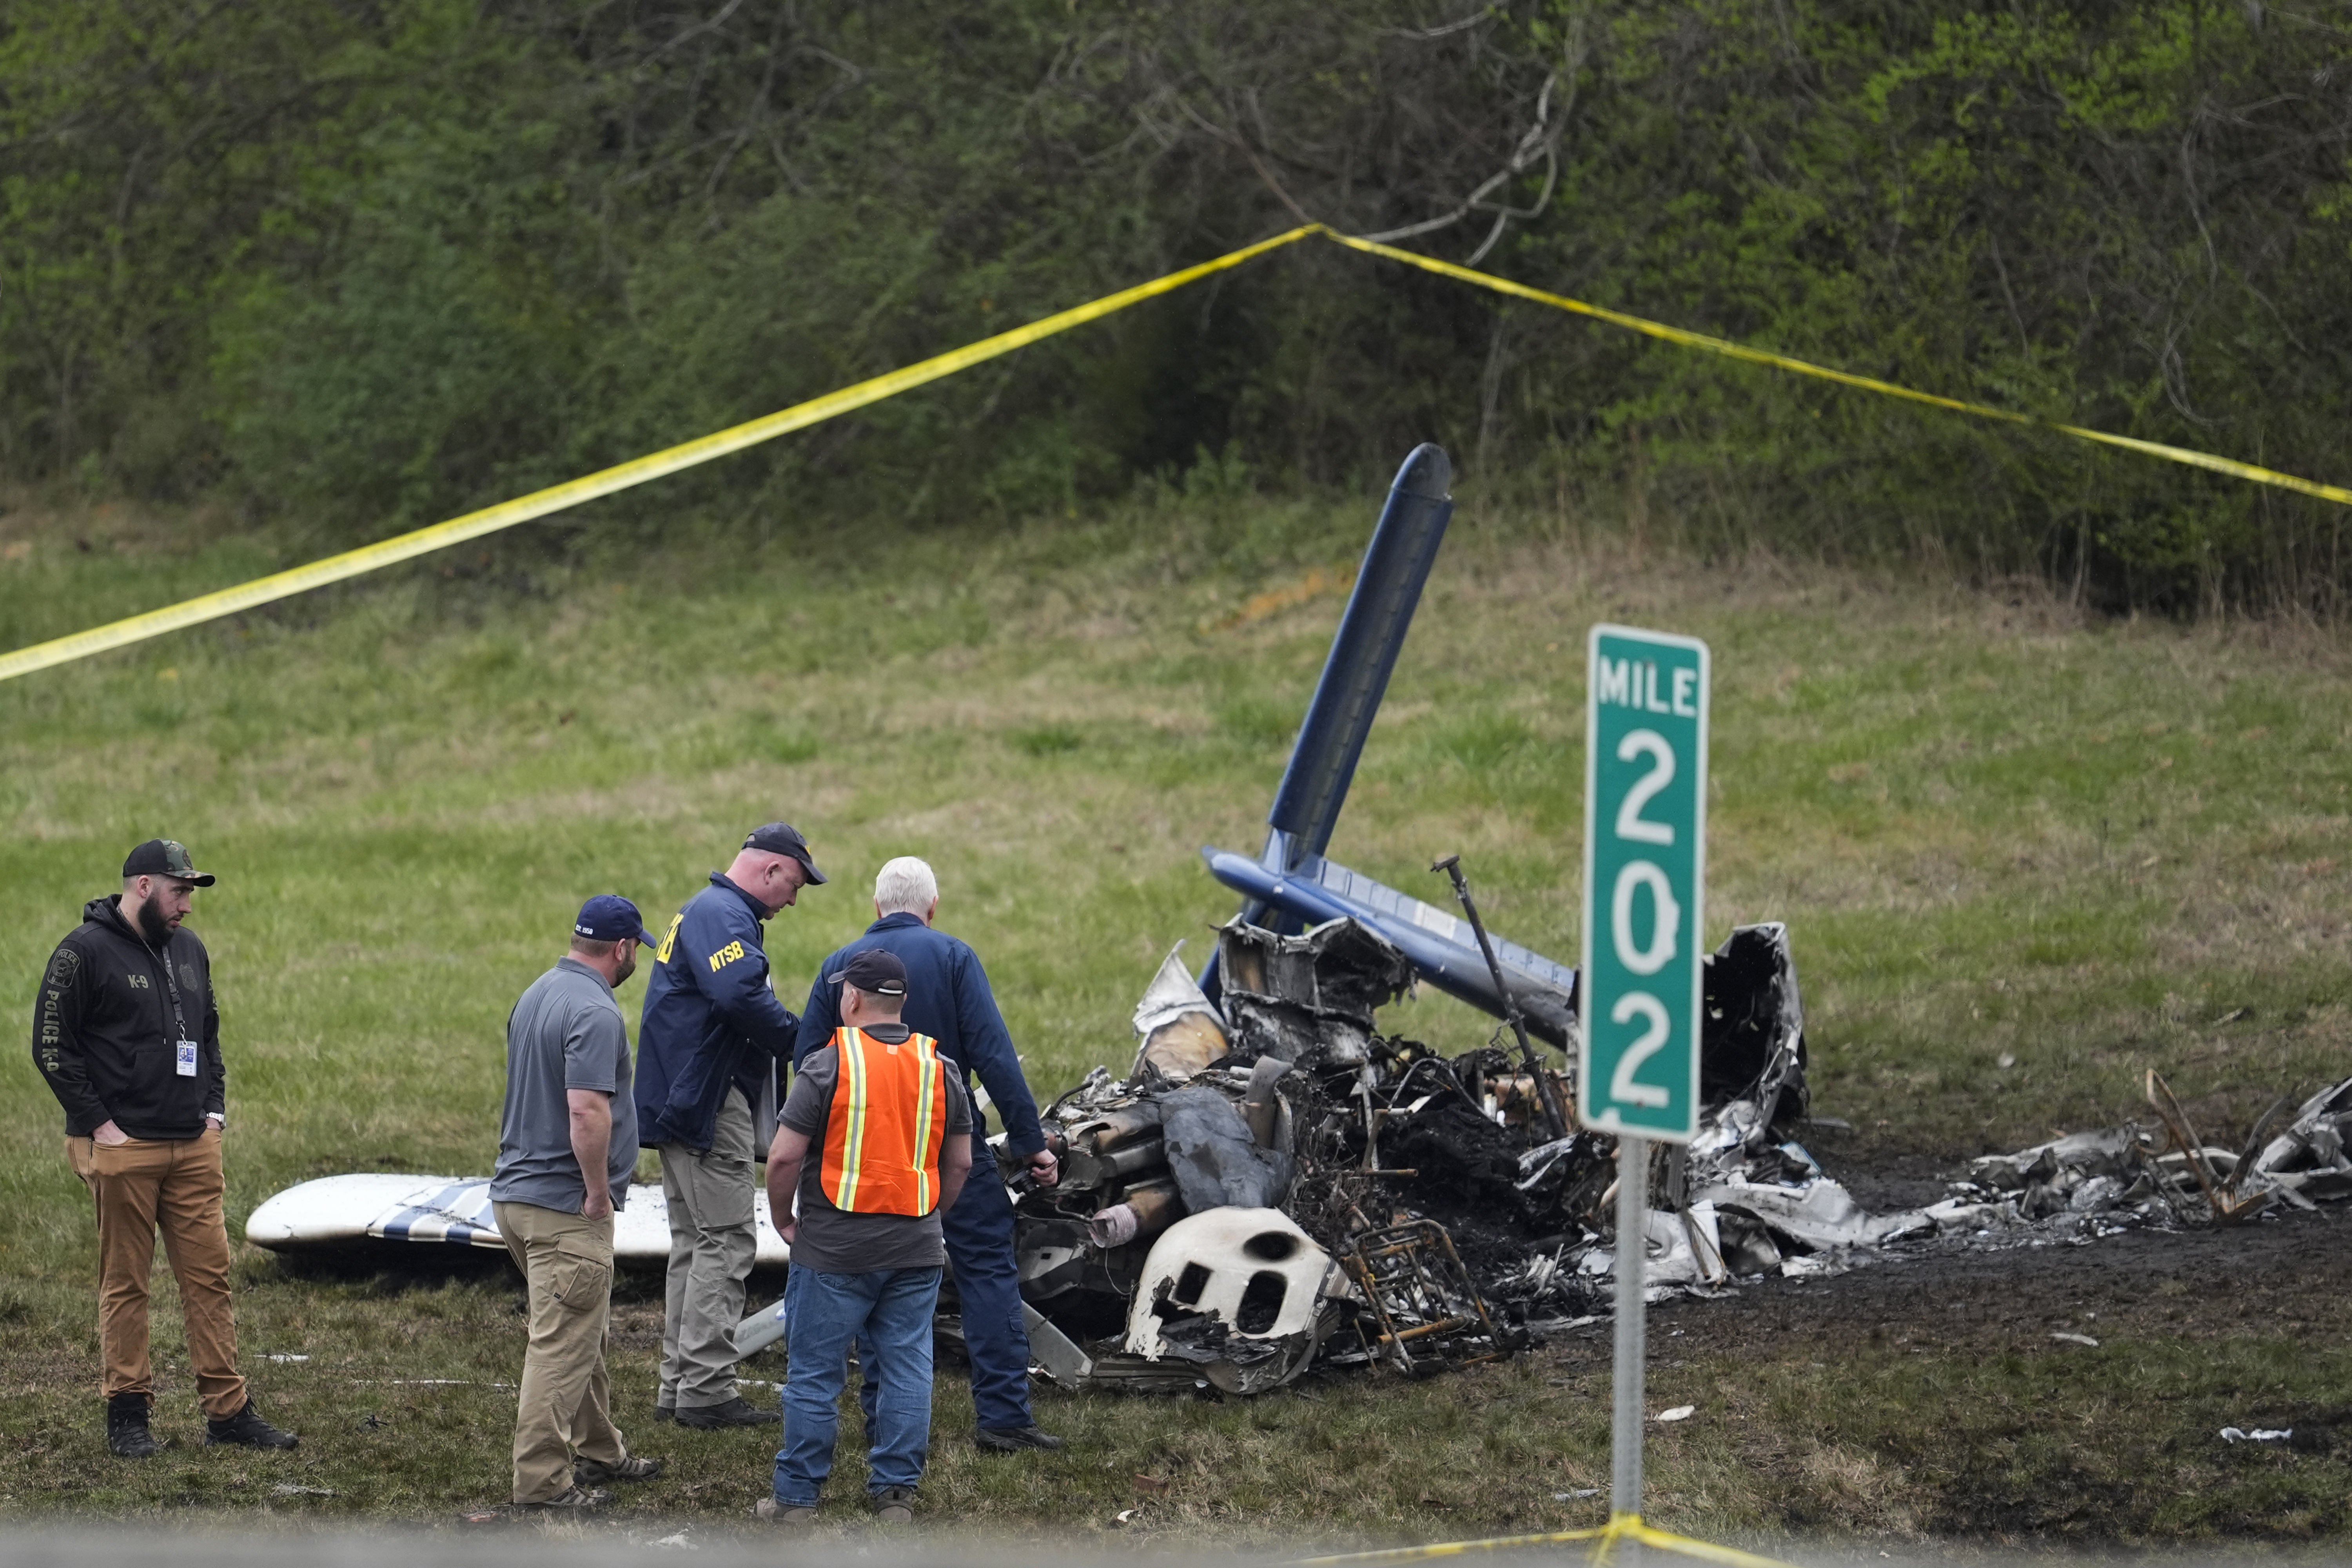 Nashville plane crash kills 5 Canadians, including 3 kids: U.S officials